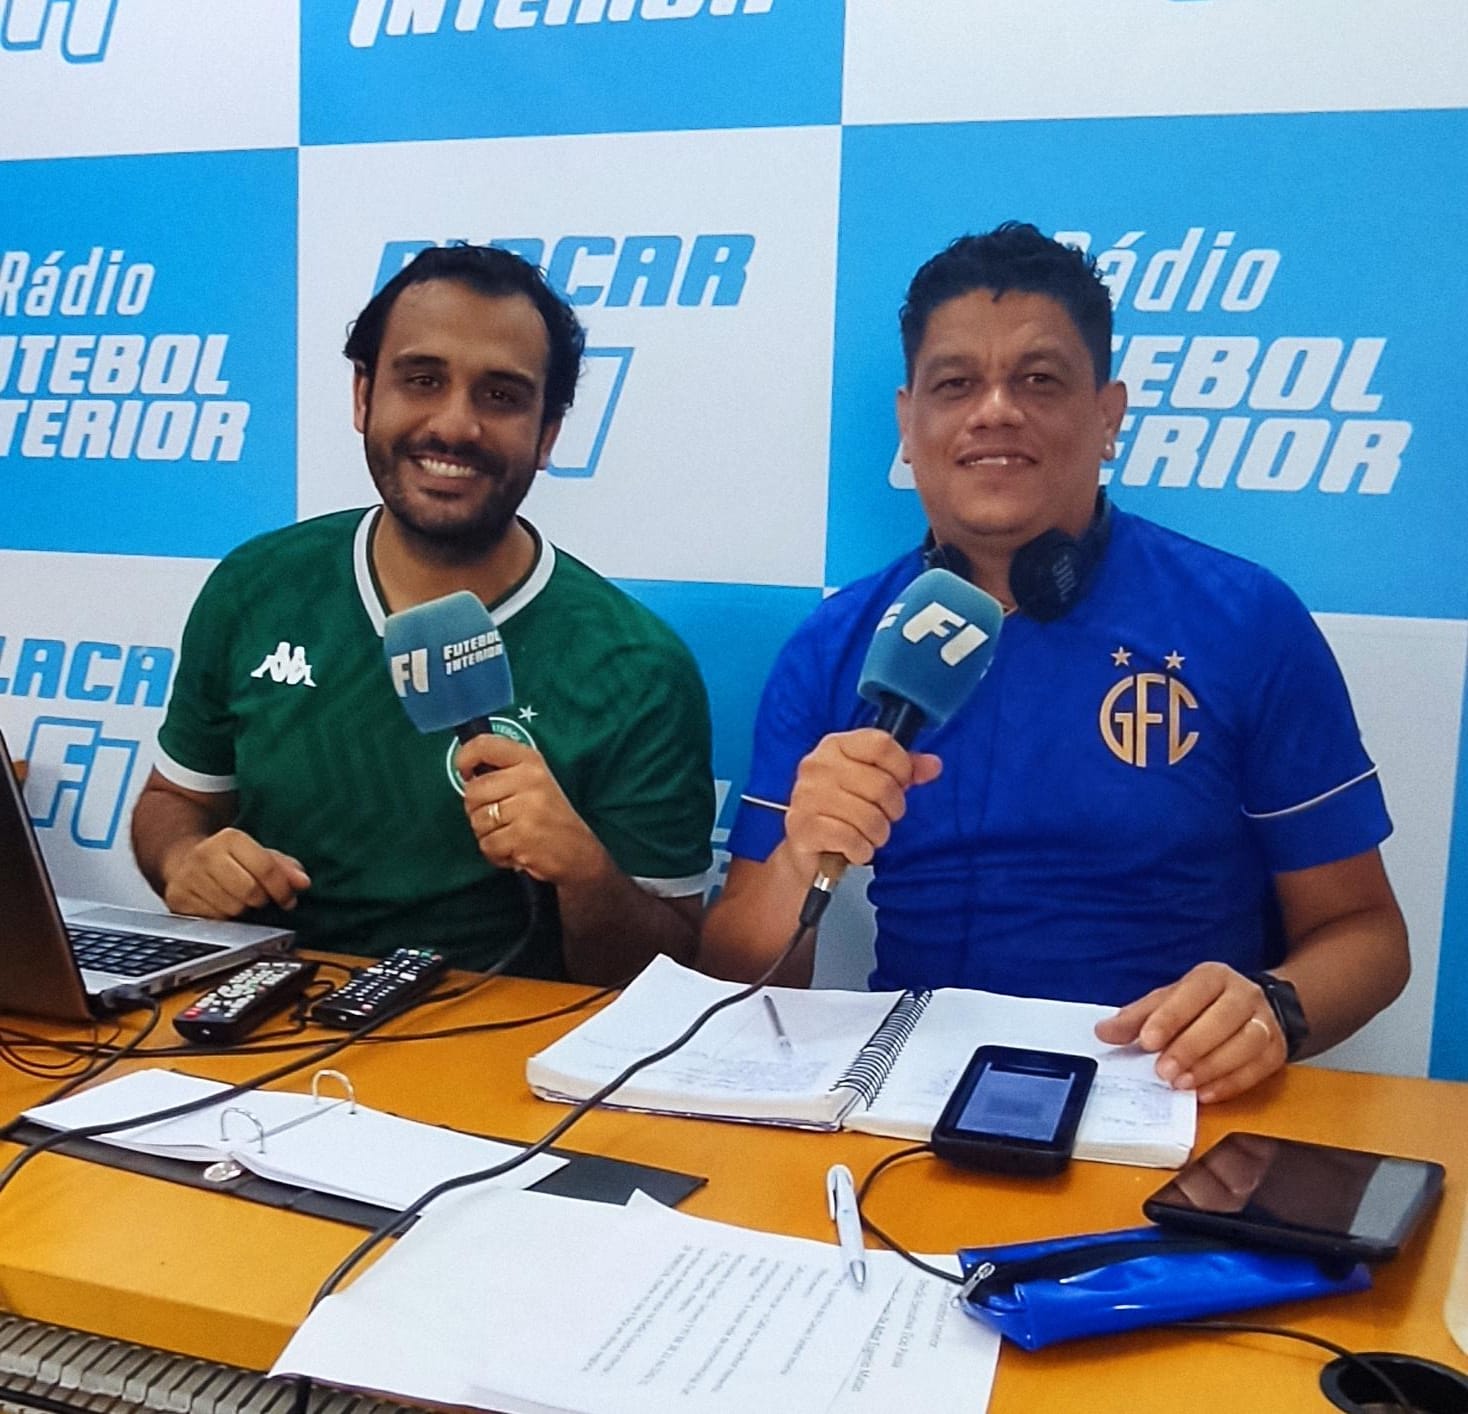 Rádio FI: Guarani ao vivo nos Canais Futebol Interior